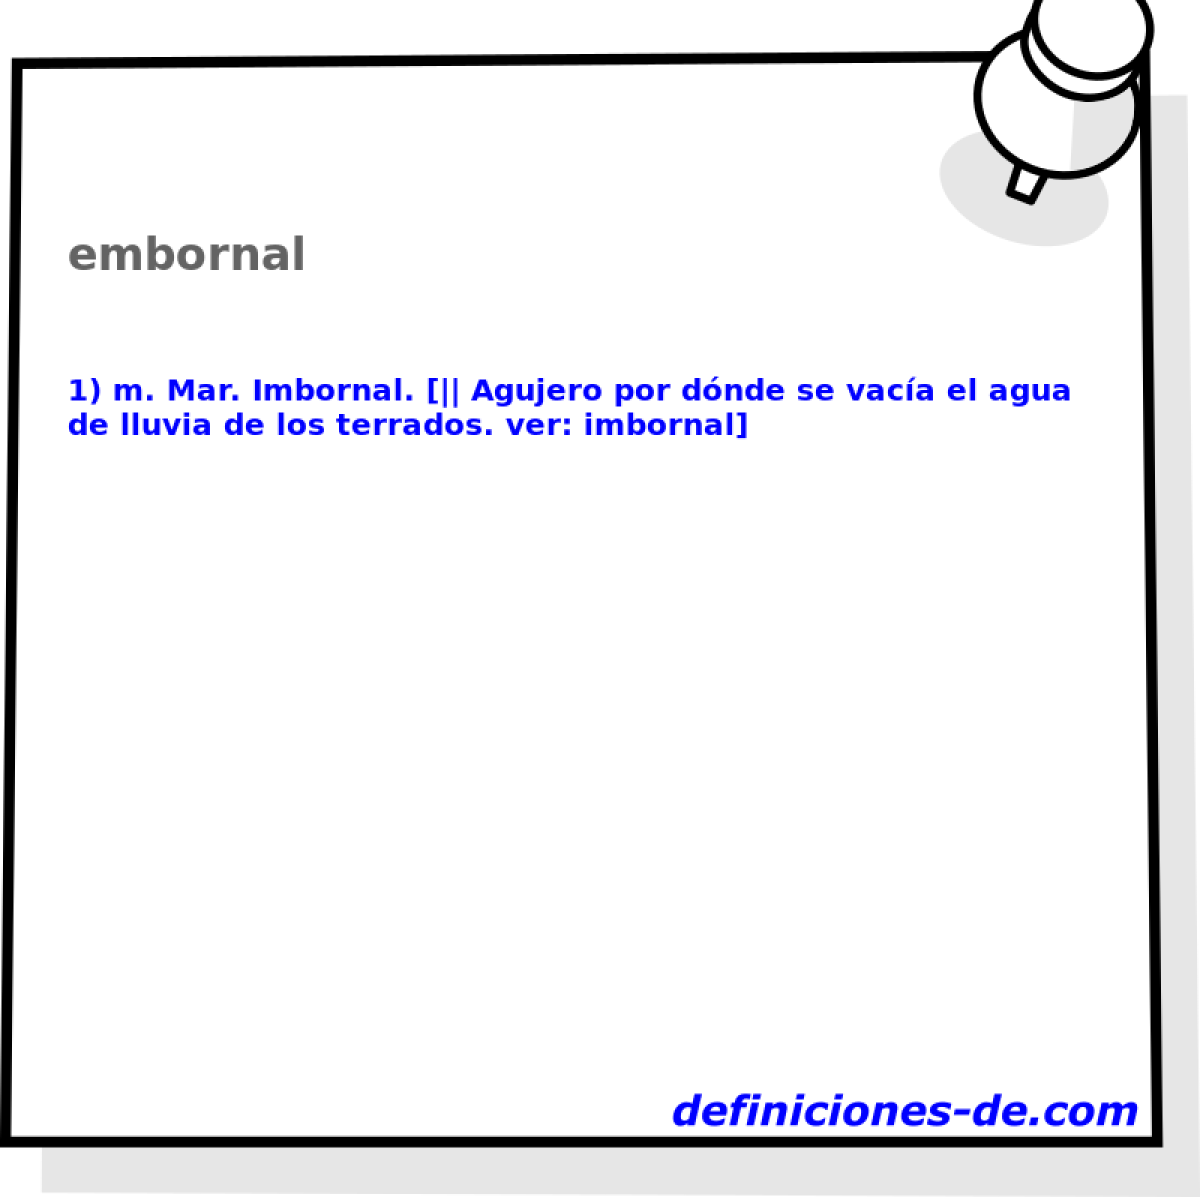 embornal 